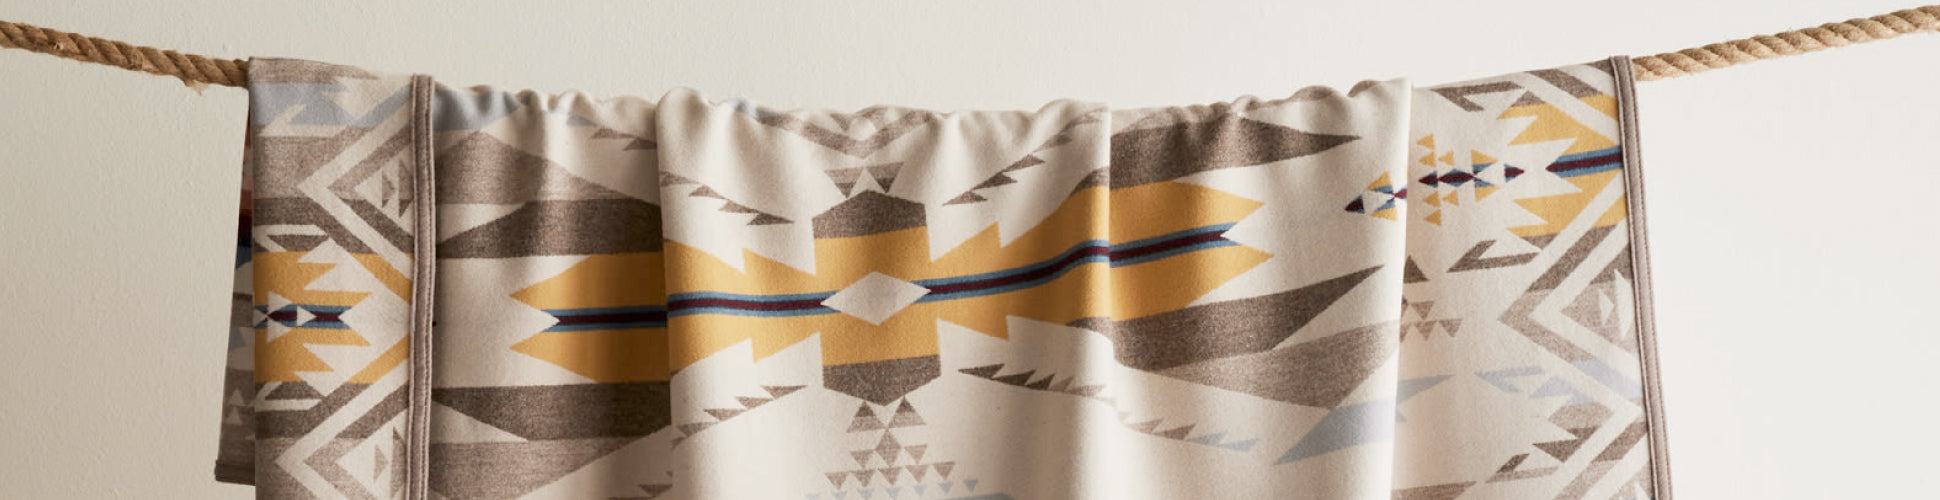 Pendleton-tæpper sengetæpper håndklæder